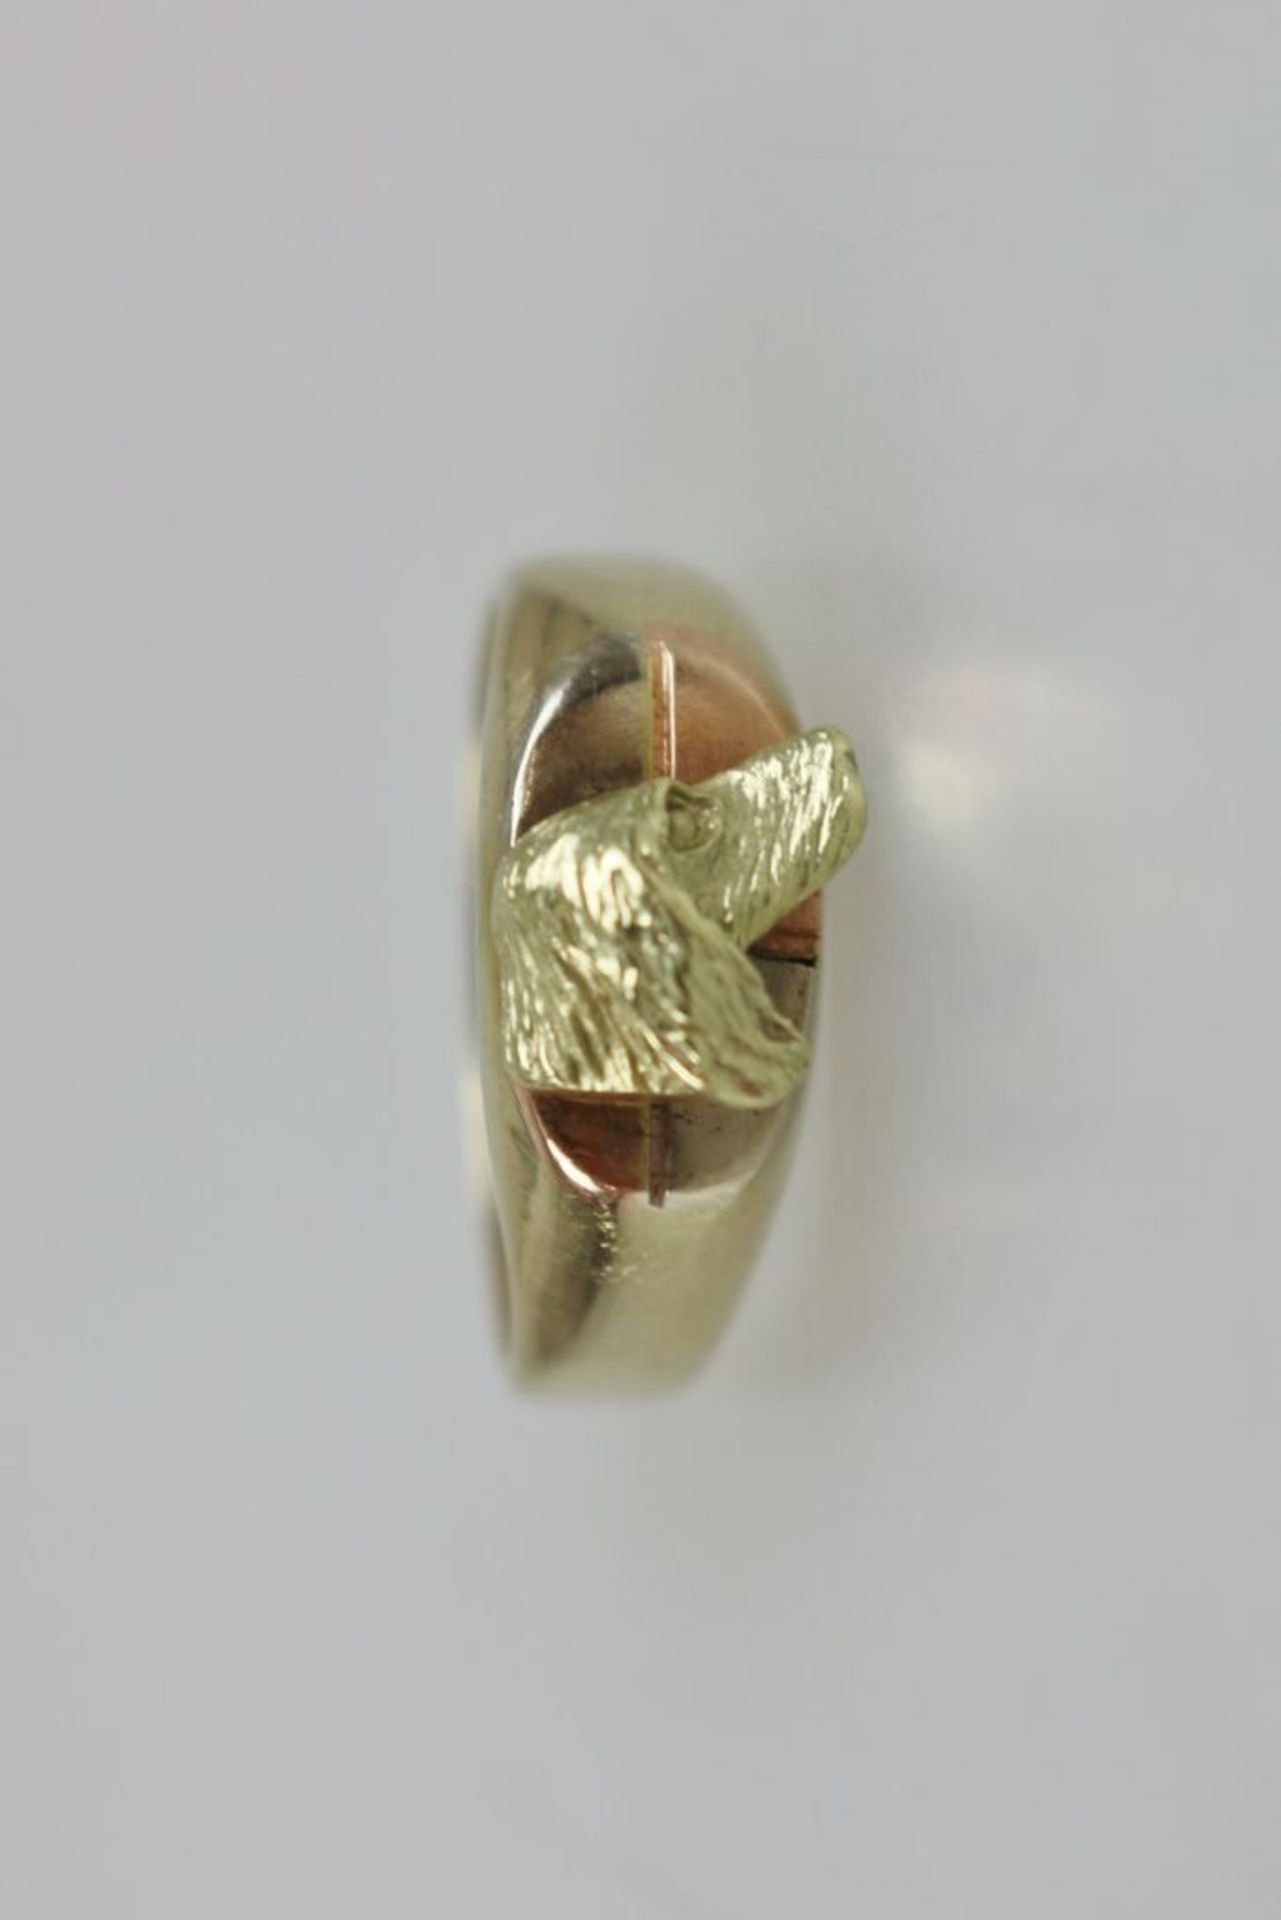 Ring mit Setterkopf, 585er Gelbgold, gestempelt. Ovale Ringplatte mit eingeritztem Kreuz, darauf